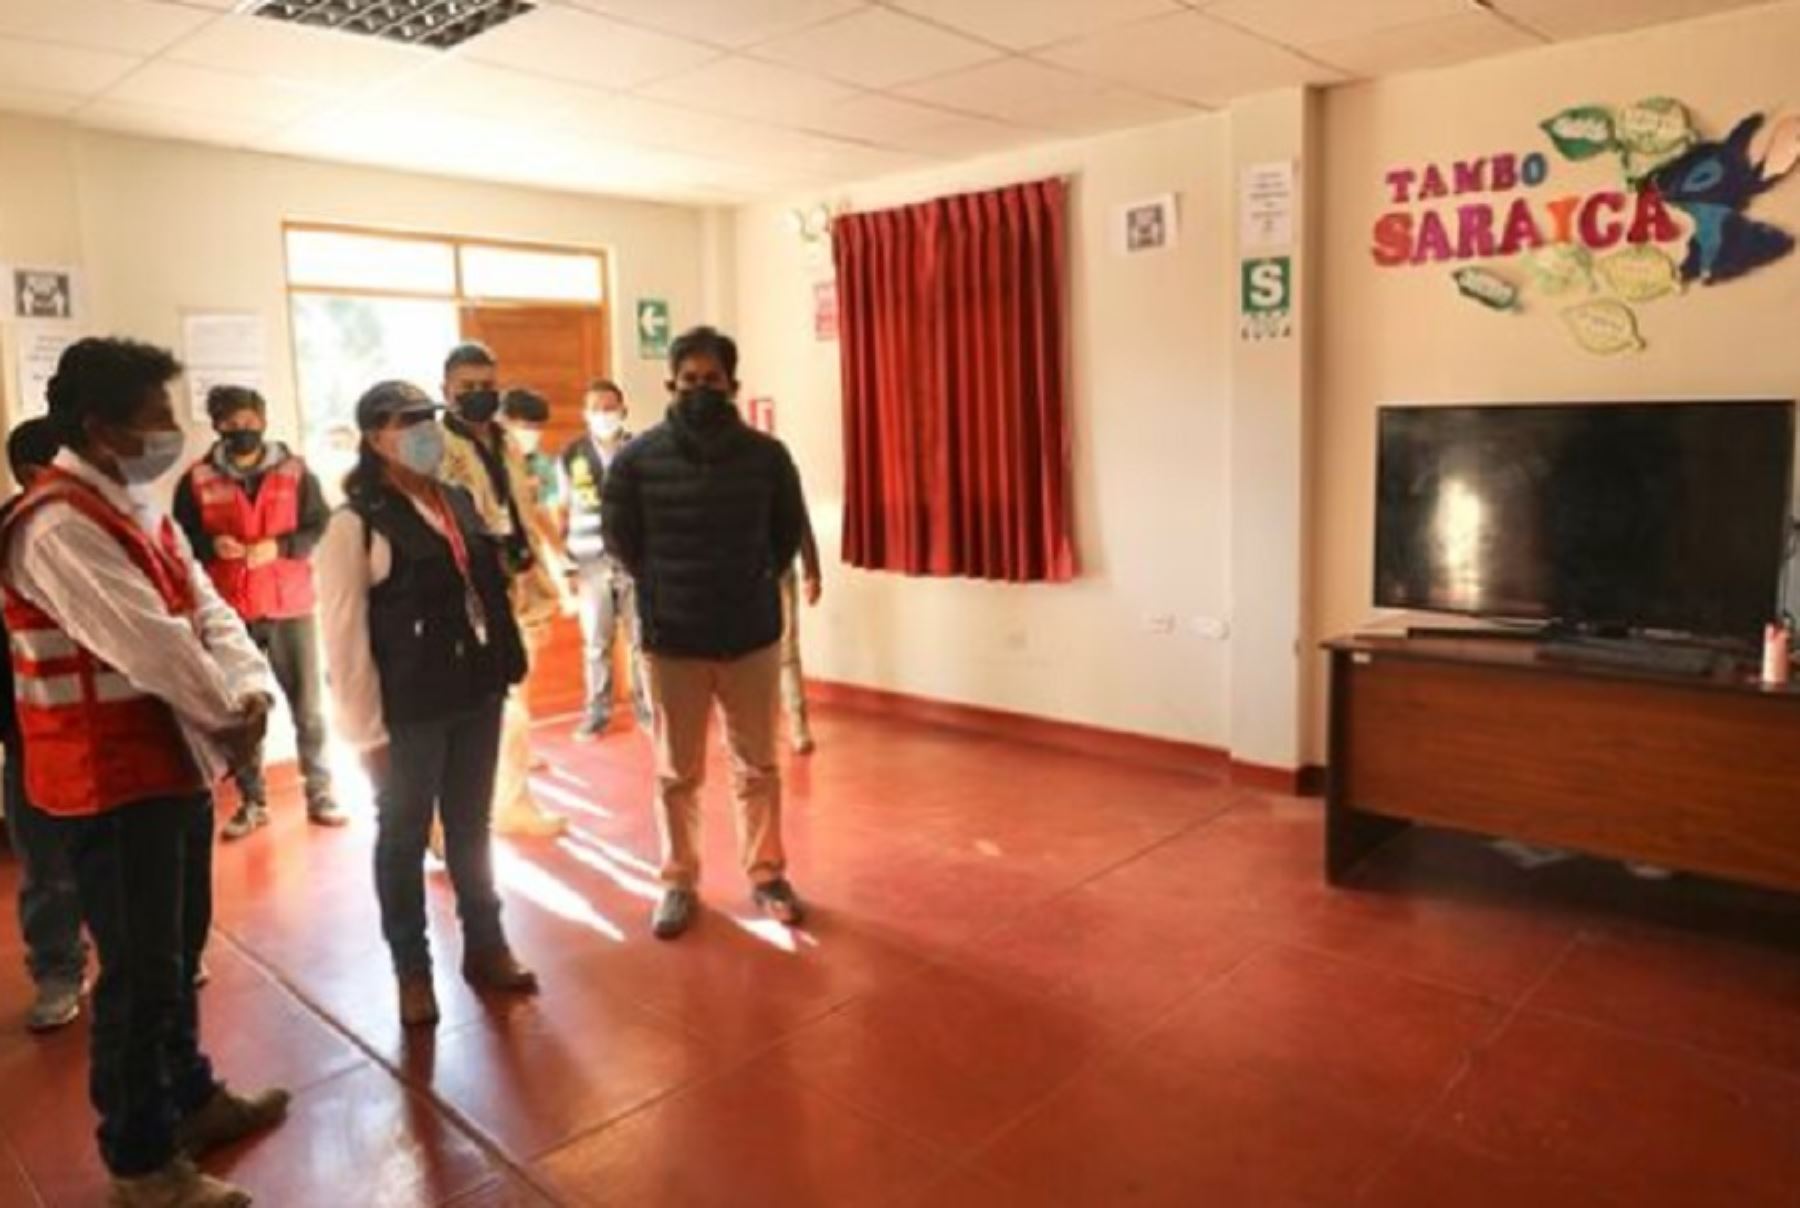 La ministra de Desarrollo e Inclusión Social, Dina Boluarte, supervisó los programas sociales en la región Apurímac, mediante la primera visita inopinada al Tambo Sarayca, ubicado en el centro poblado del mismo nombre, en el distrito de Yanaca, provincia de Aymaraes.